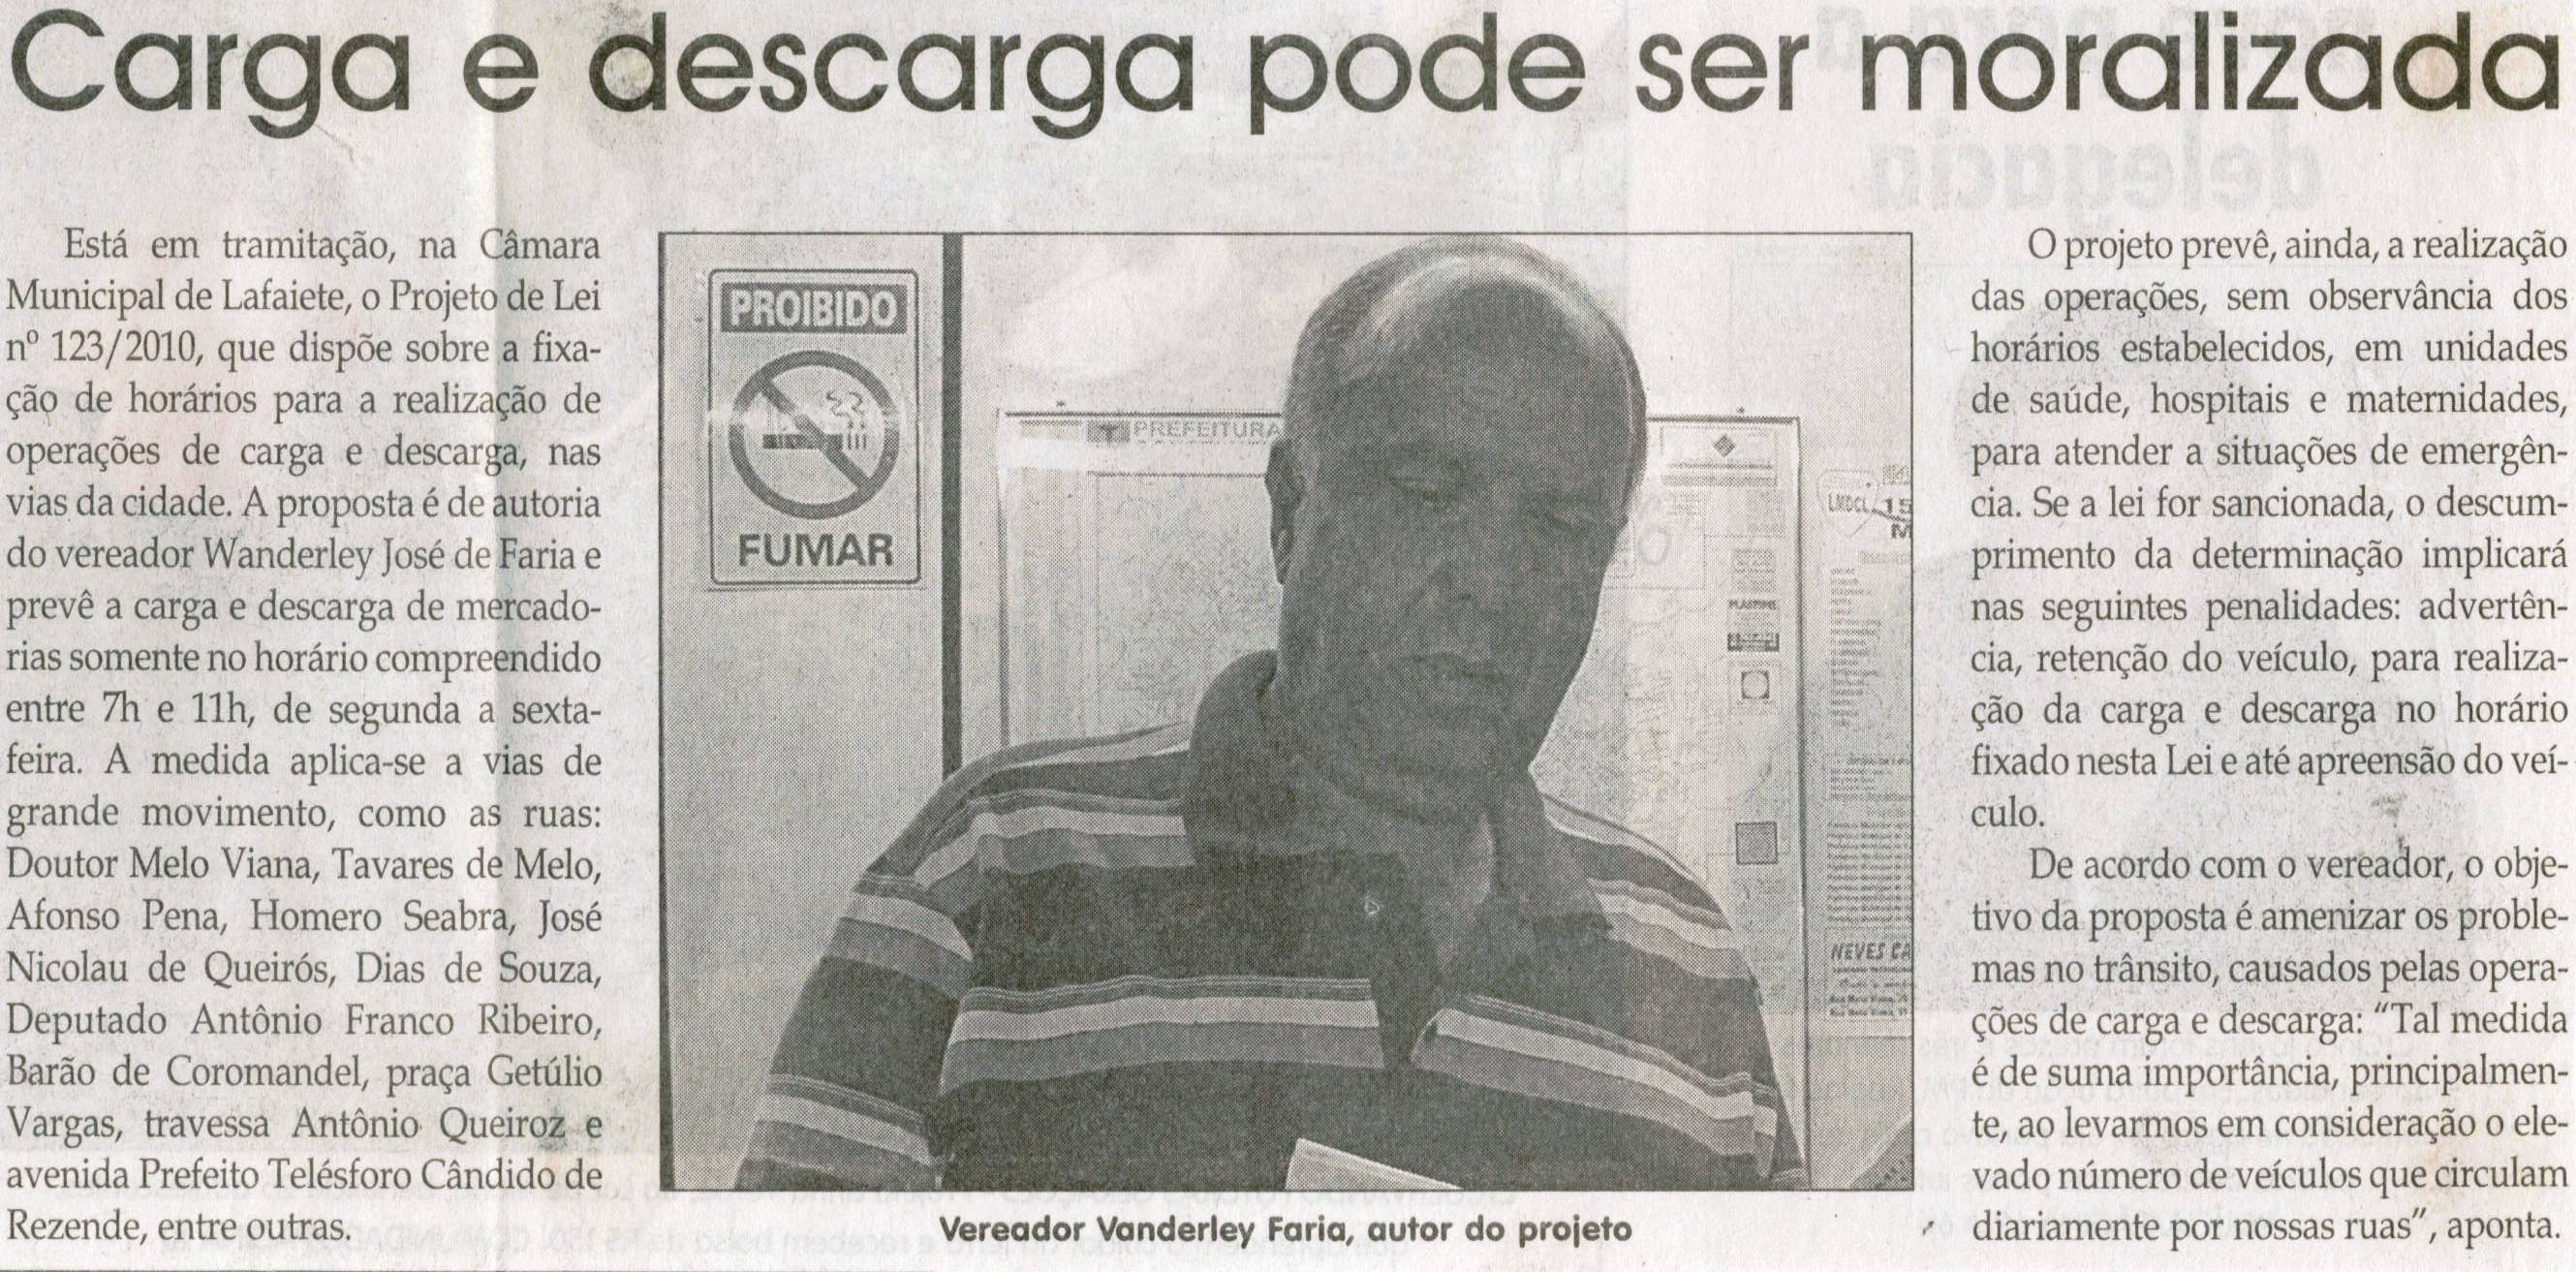 Carga e descarga poderá ser moralizada. Jornal Correio da Cidade, Conselheiro Lafaiete, 13 nov. 2010, p. 02.